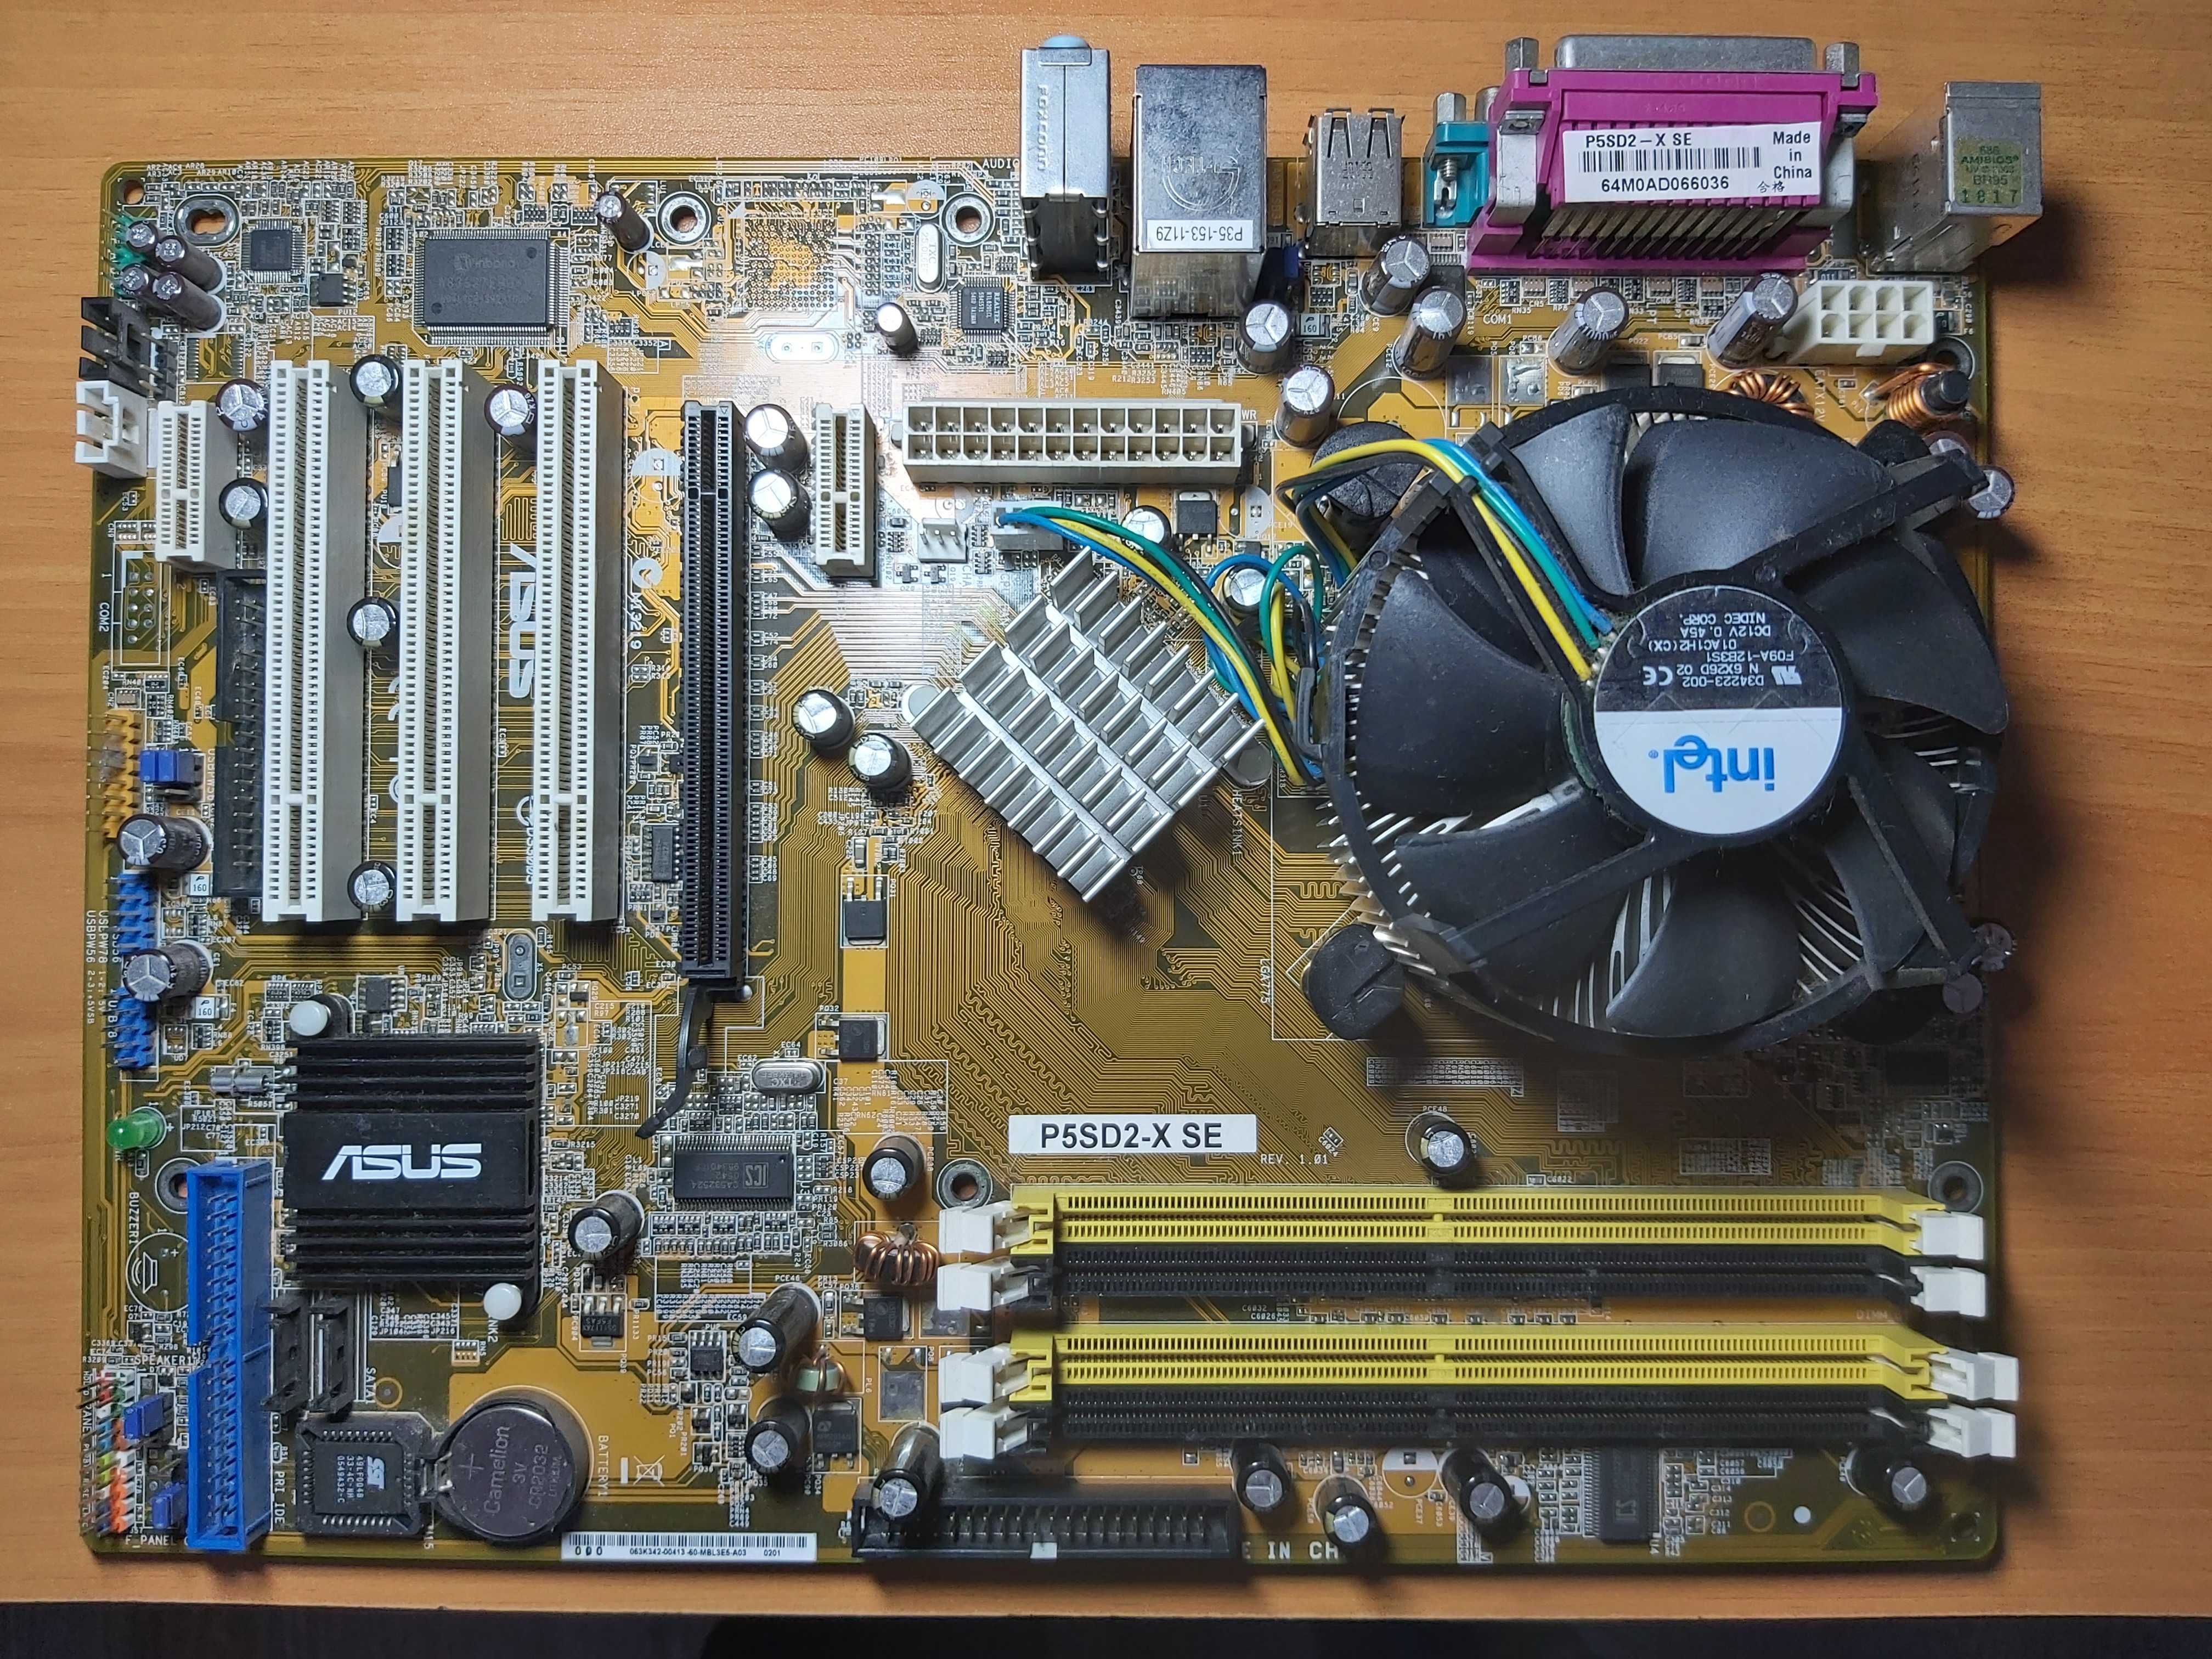 Материнская плата Asus P5SD2-X SE,с процессором,охлаждением и памятью.